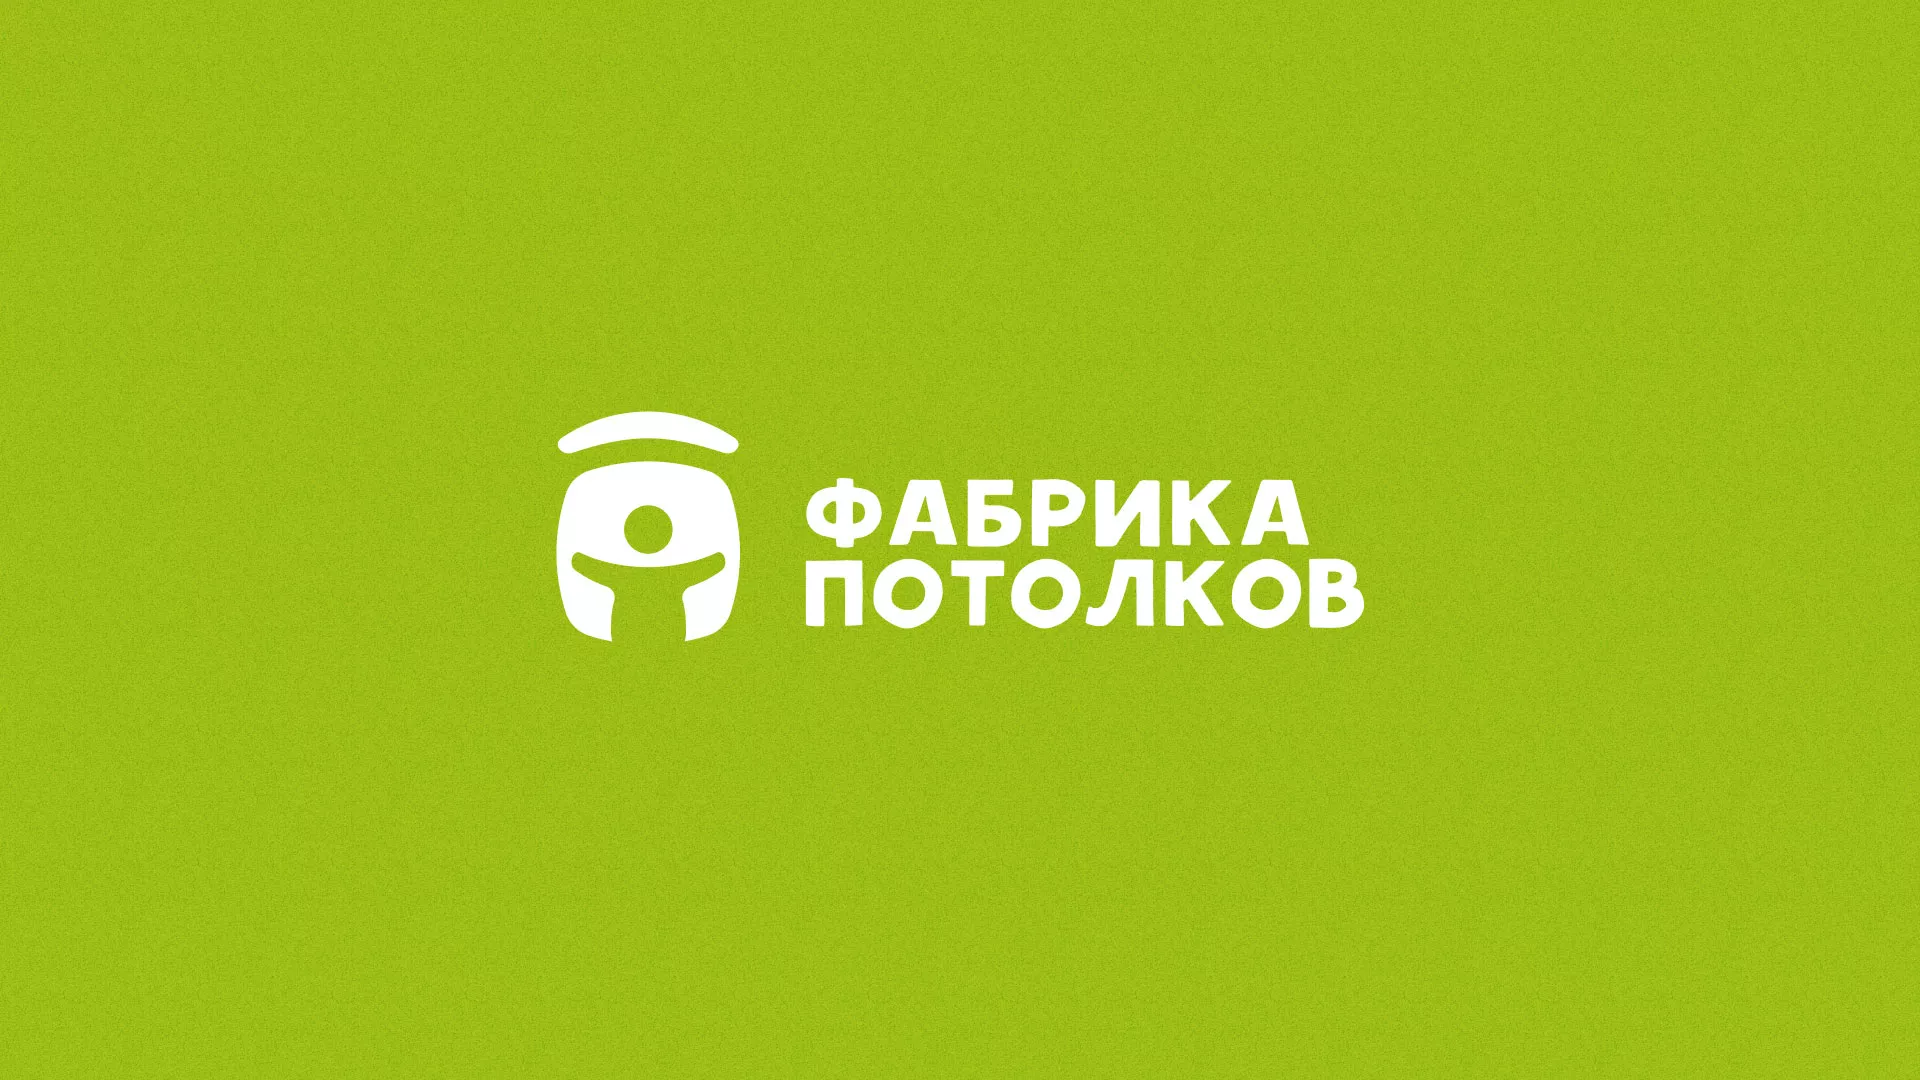 Разработка логотипа для производства натяжных потолков в Вышнем Волочке